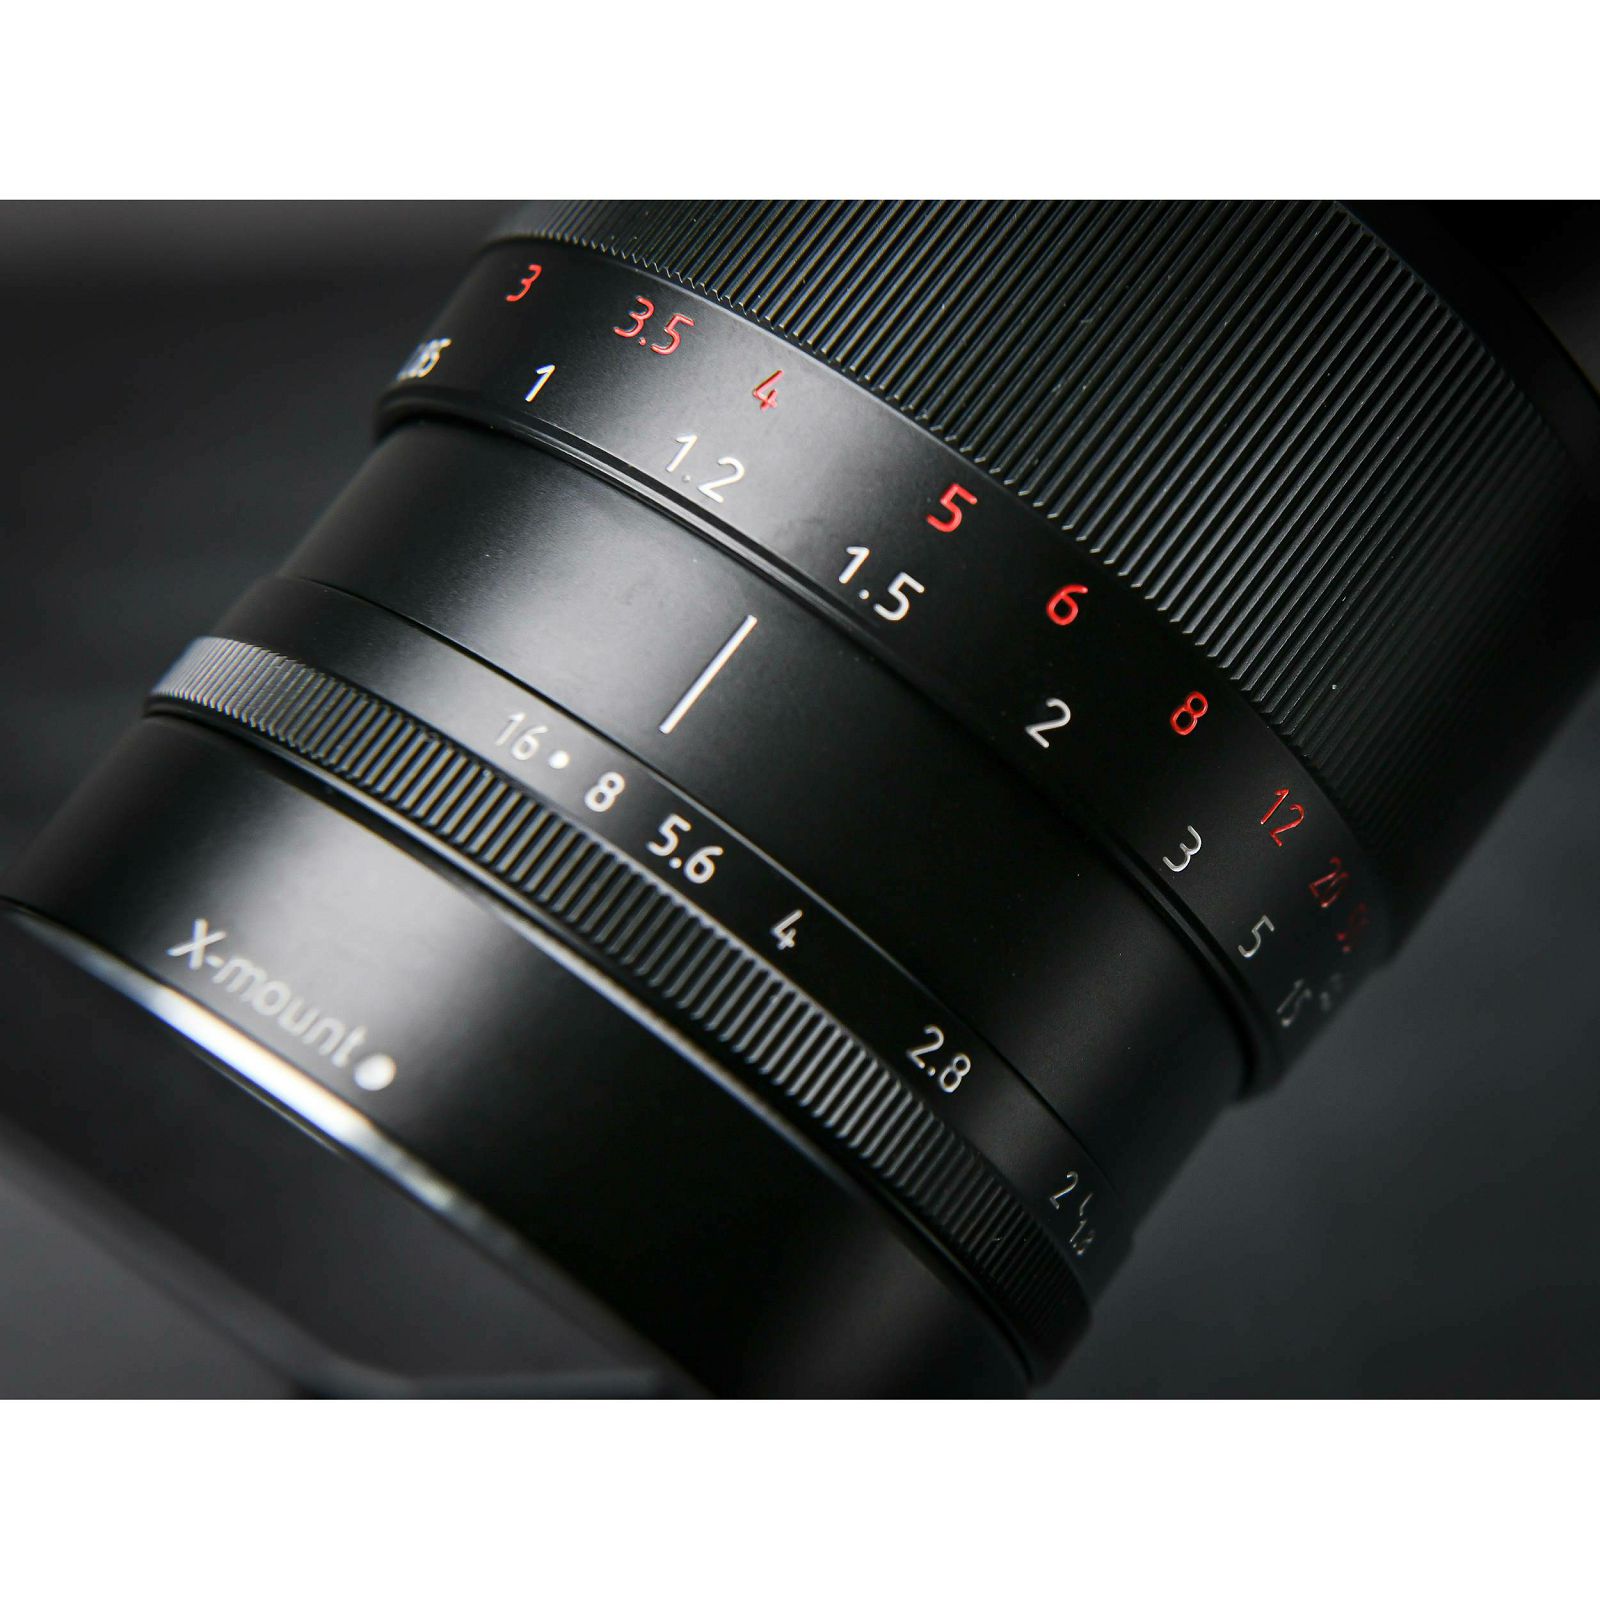 Sirui 50mm f/1.8 1.33x Anamorphic objektiv za Fujifilm X (SR-MEK7X)